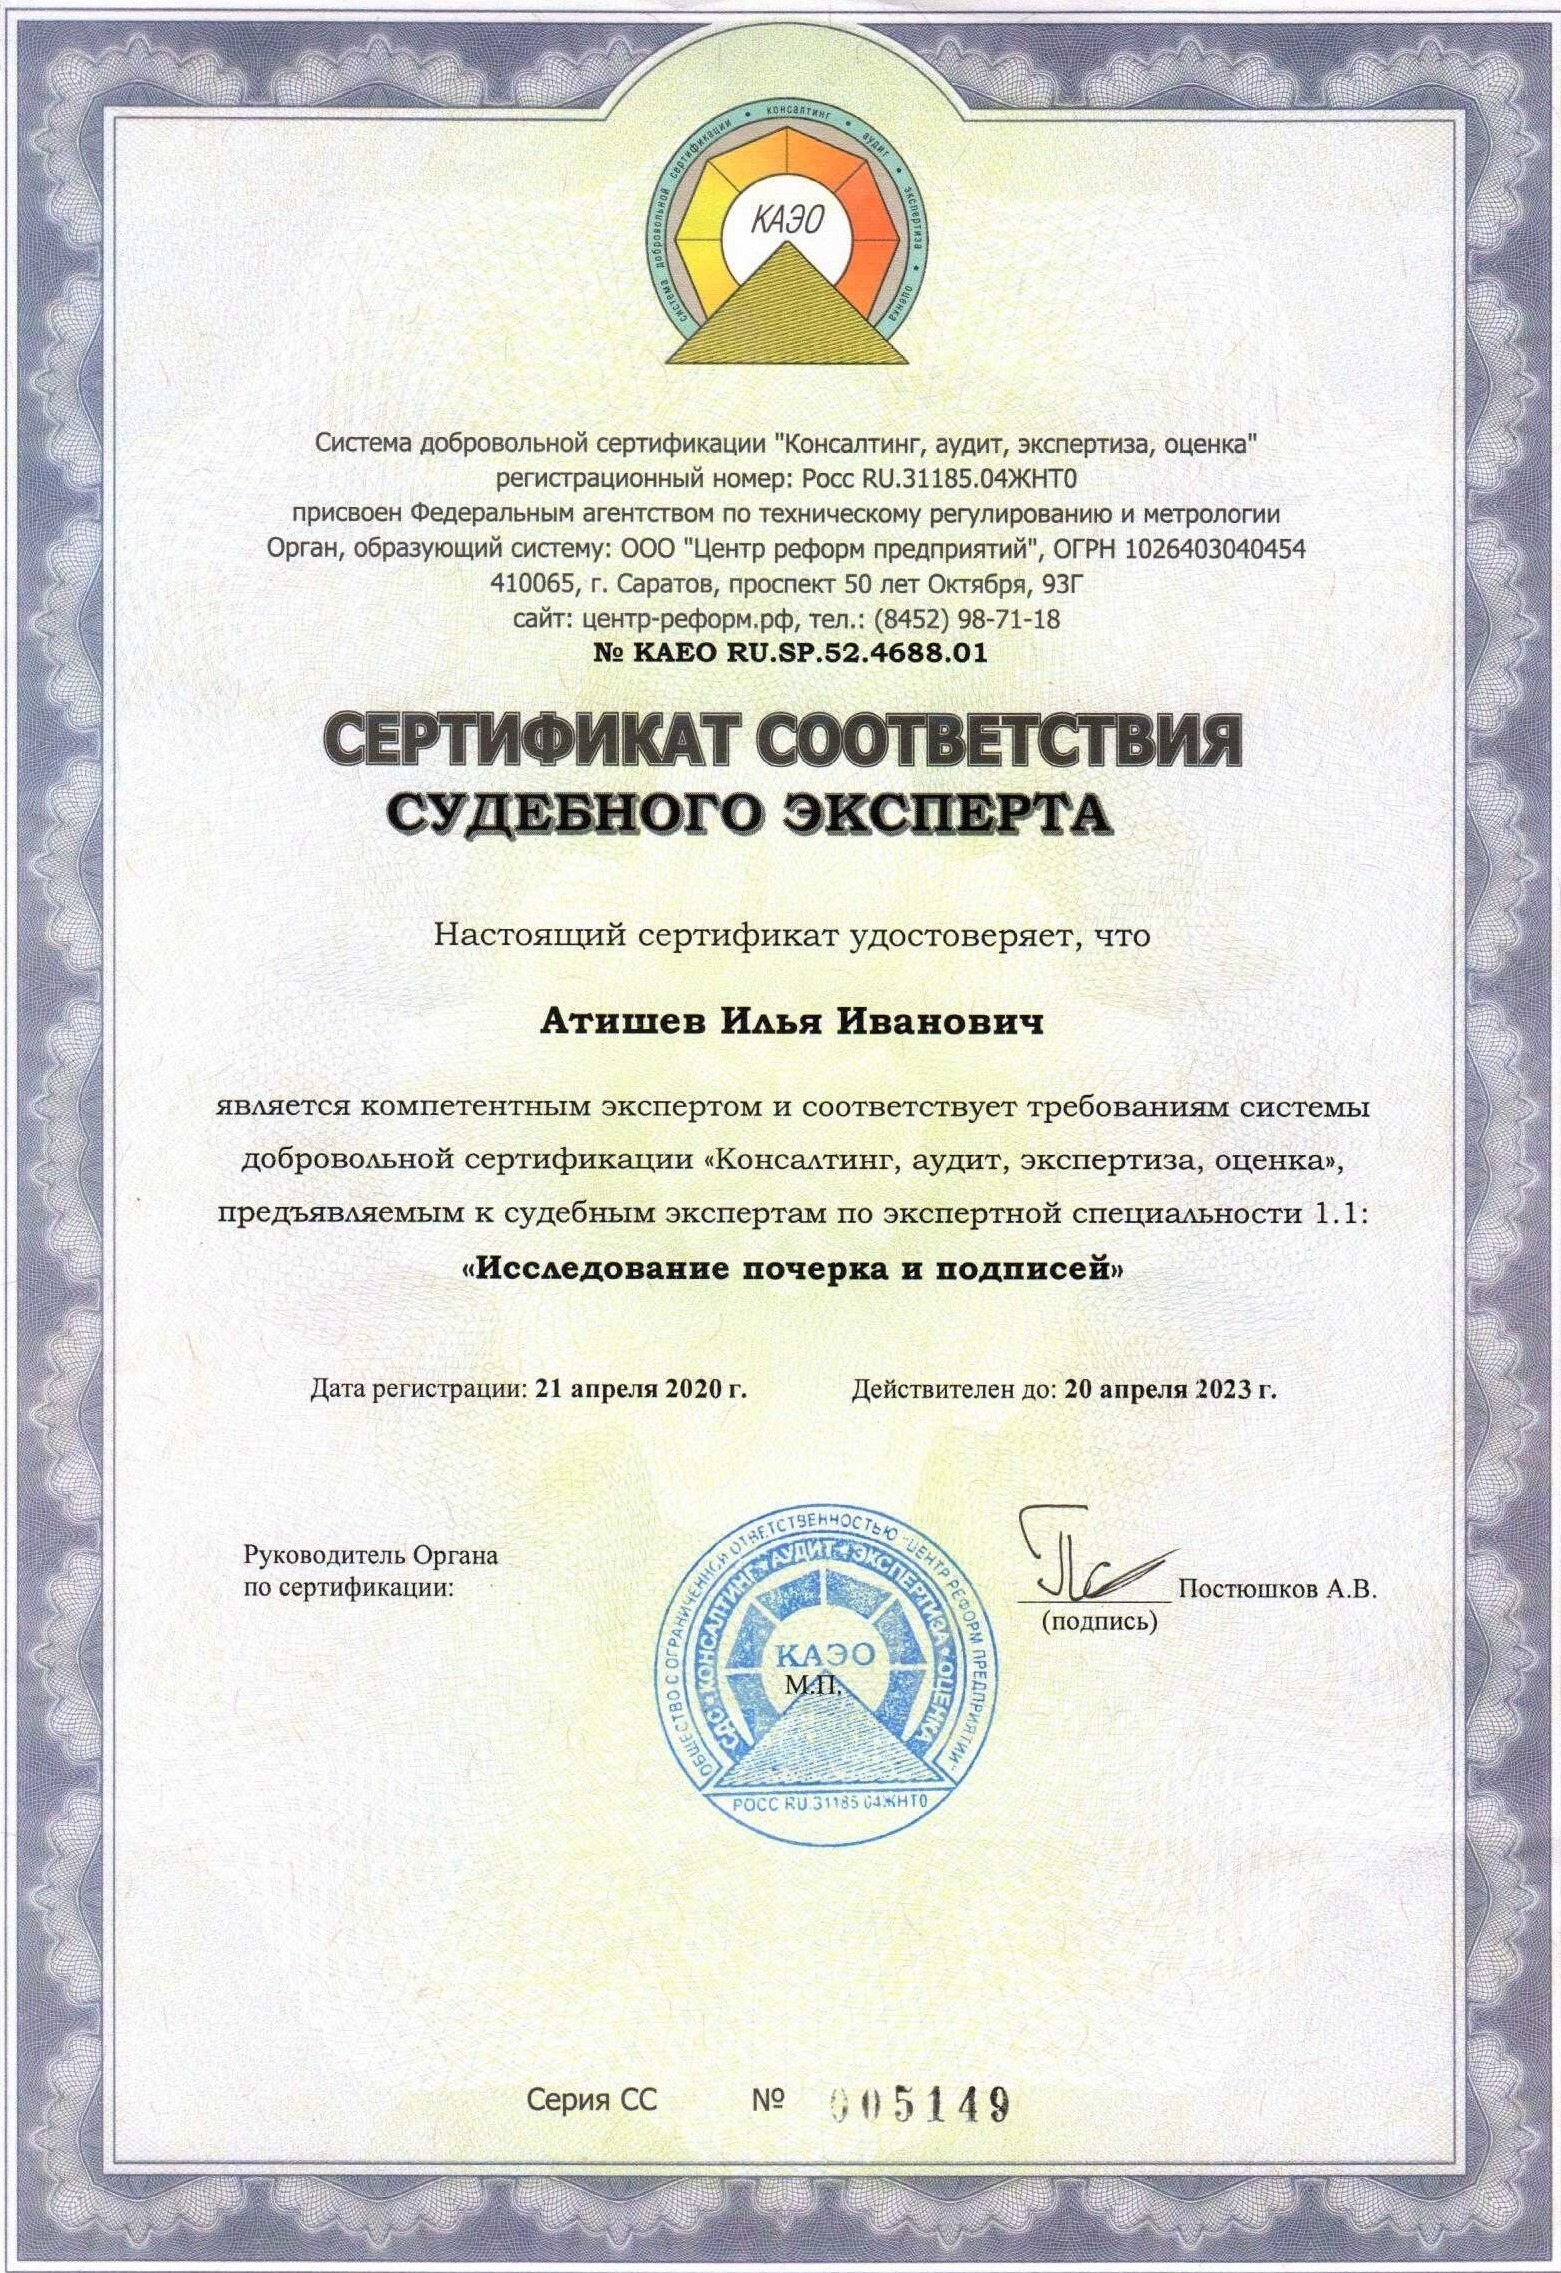 сертификат судебного экперта